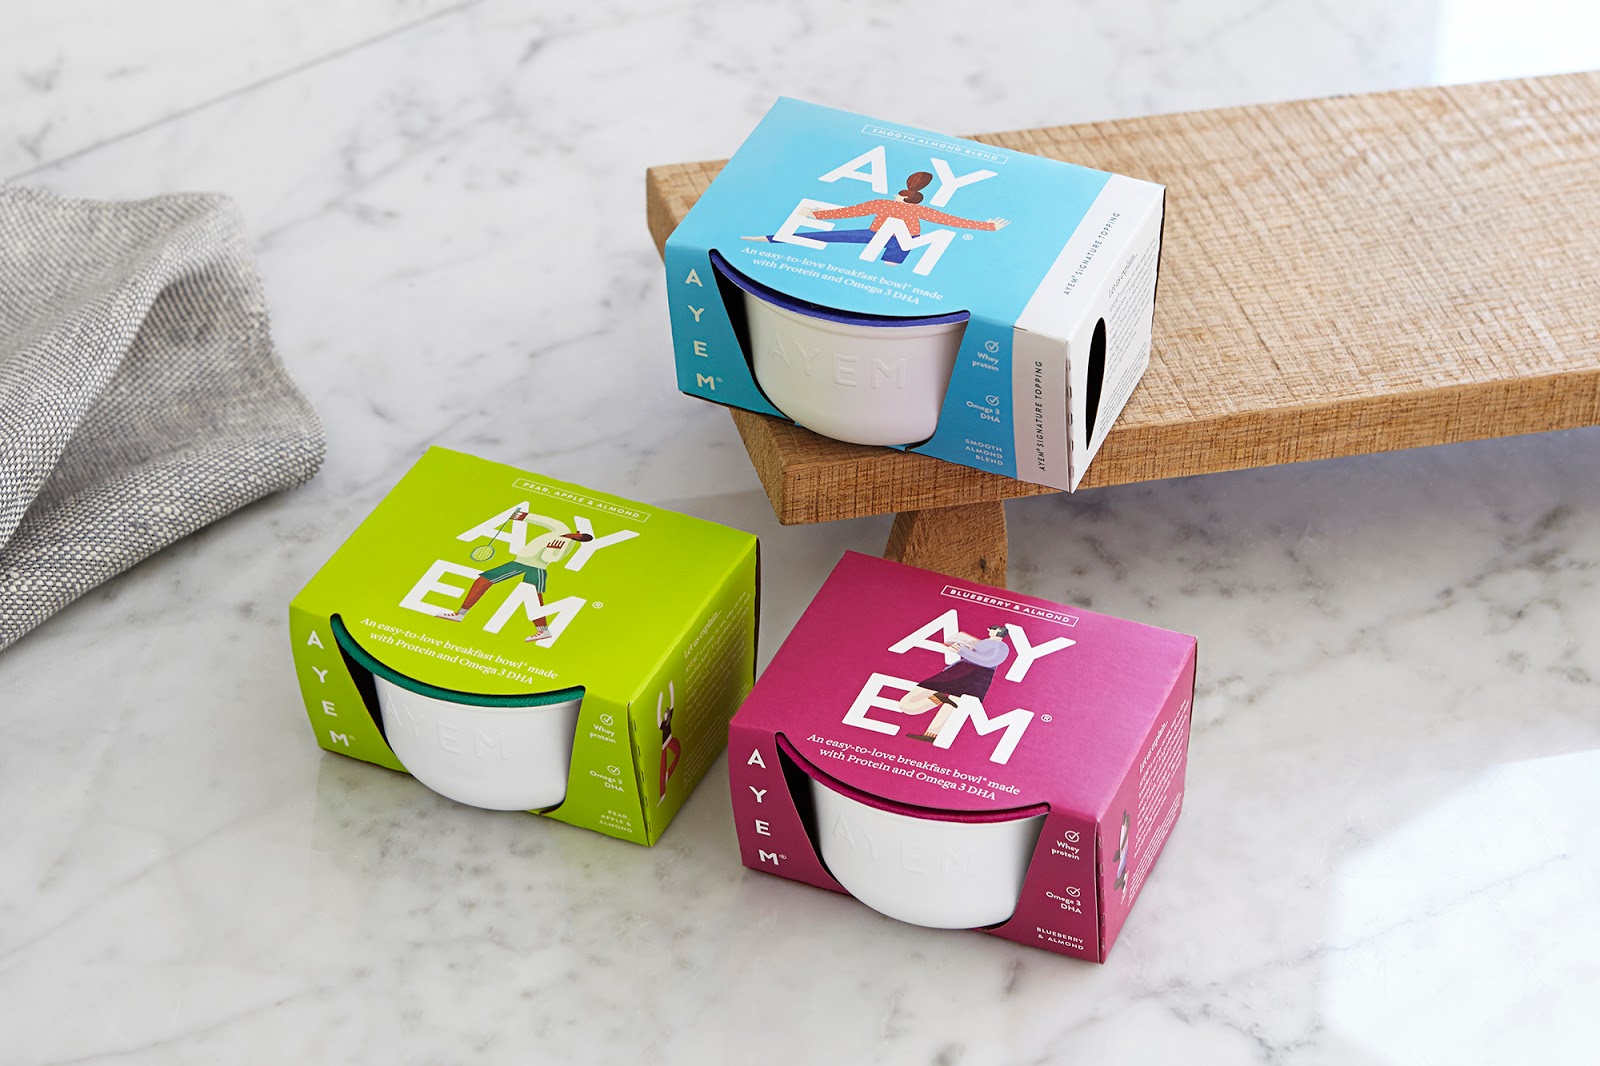 燕麦早餐瘦身健康西安oe欧亿体育app官方下载
品牌策划包装设计VI设计logo设计